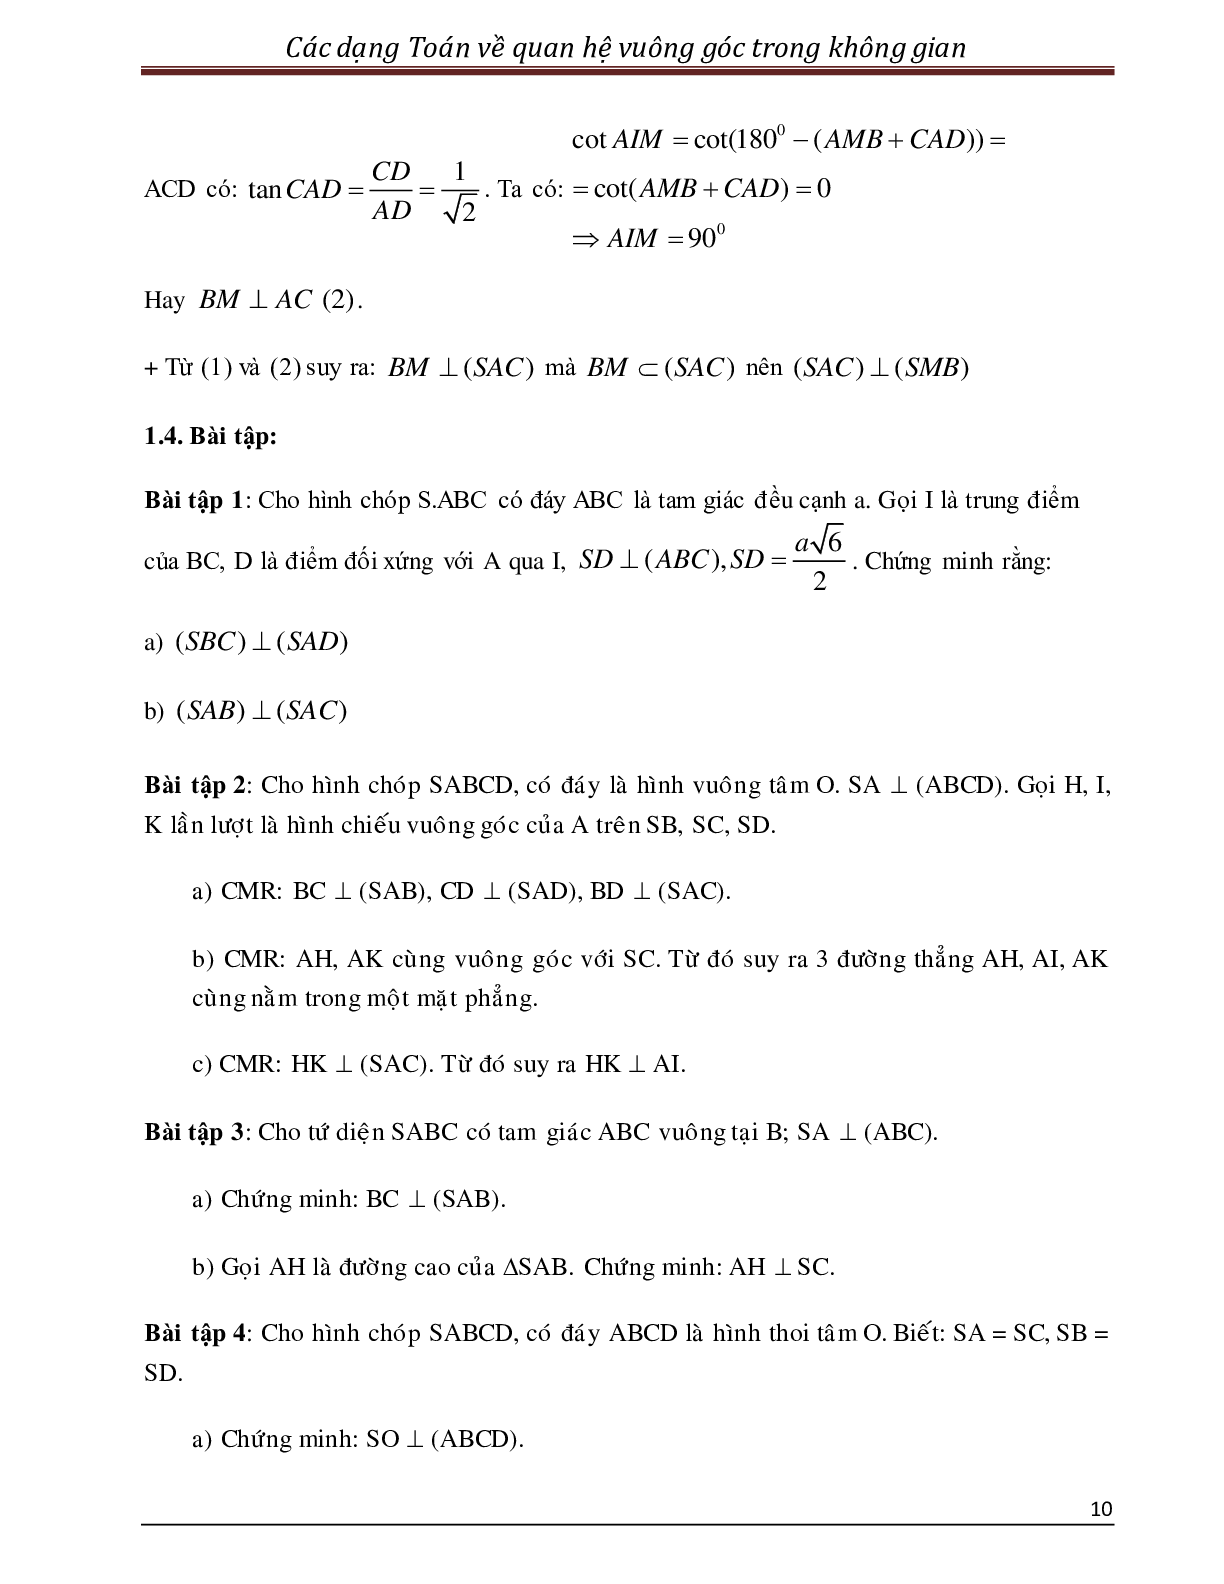 Các dạng toán quan hệ vuông góc trong không gian (trang 10)